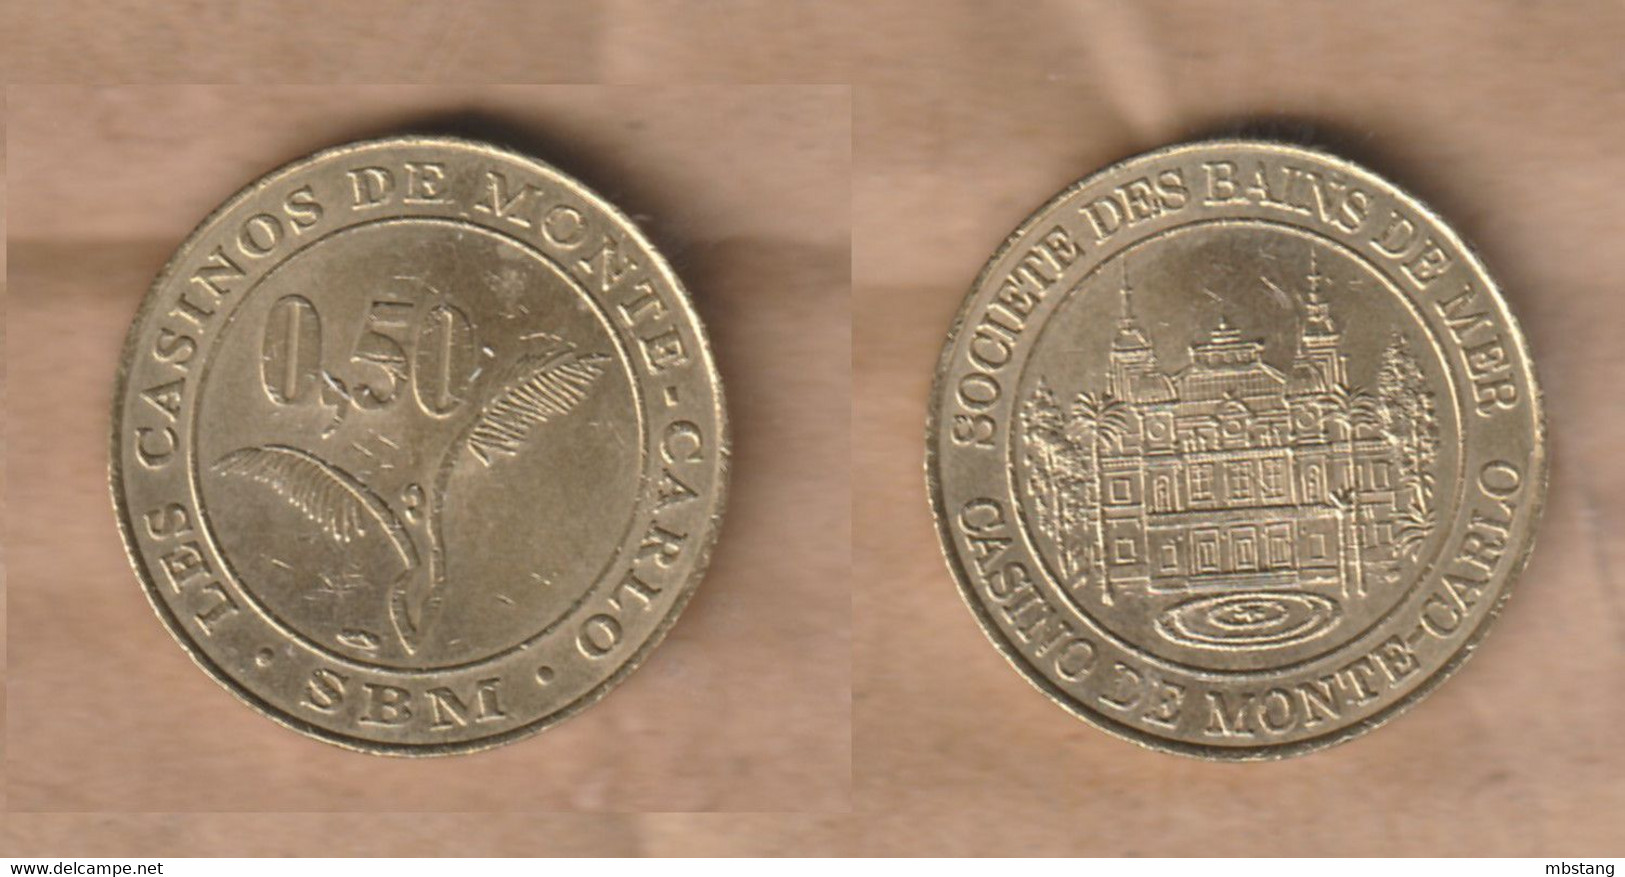 MONACO GETTONE TOKEN JETON FICHA CASINO MONTE CARLO  0,50 - Elongated Coins